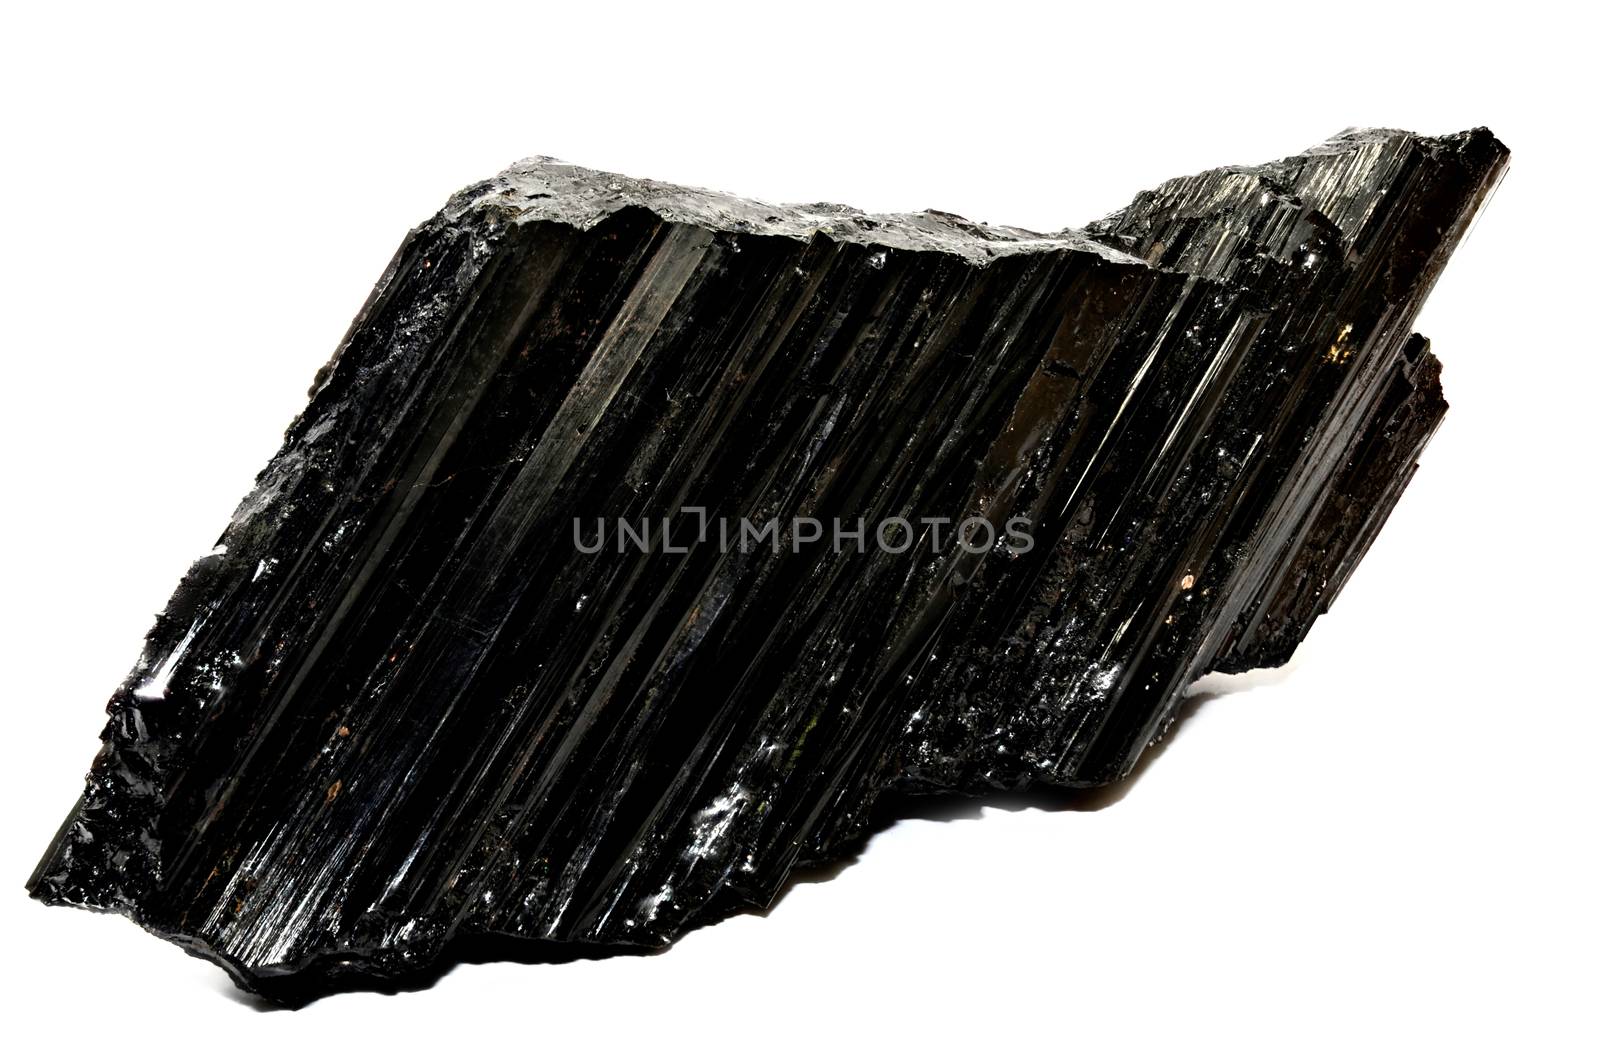  Black Tourmaline-Shorl nature specimen by stellar